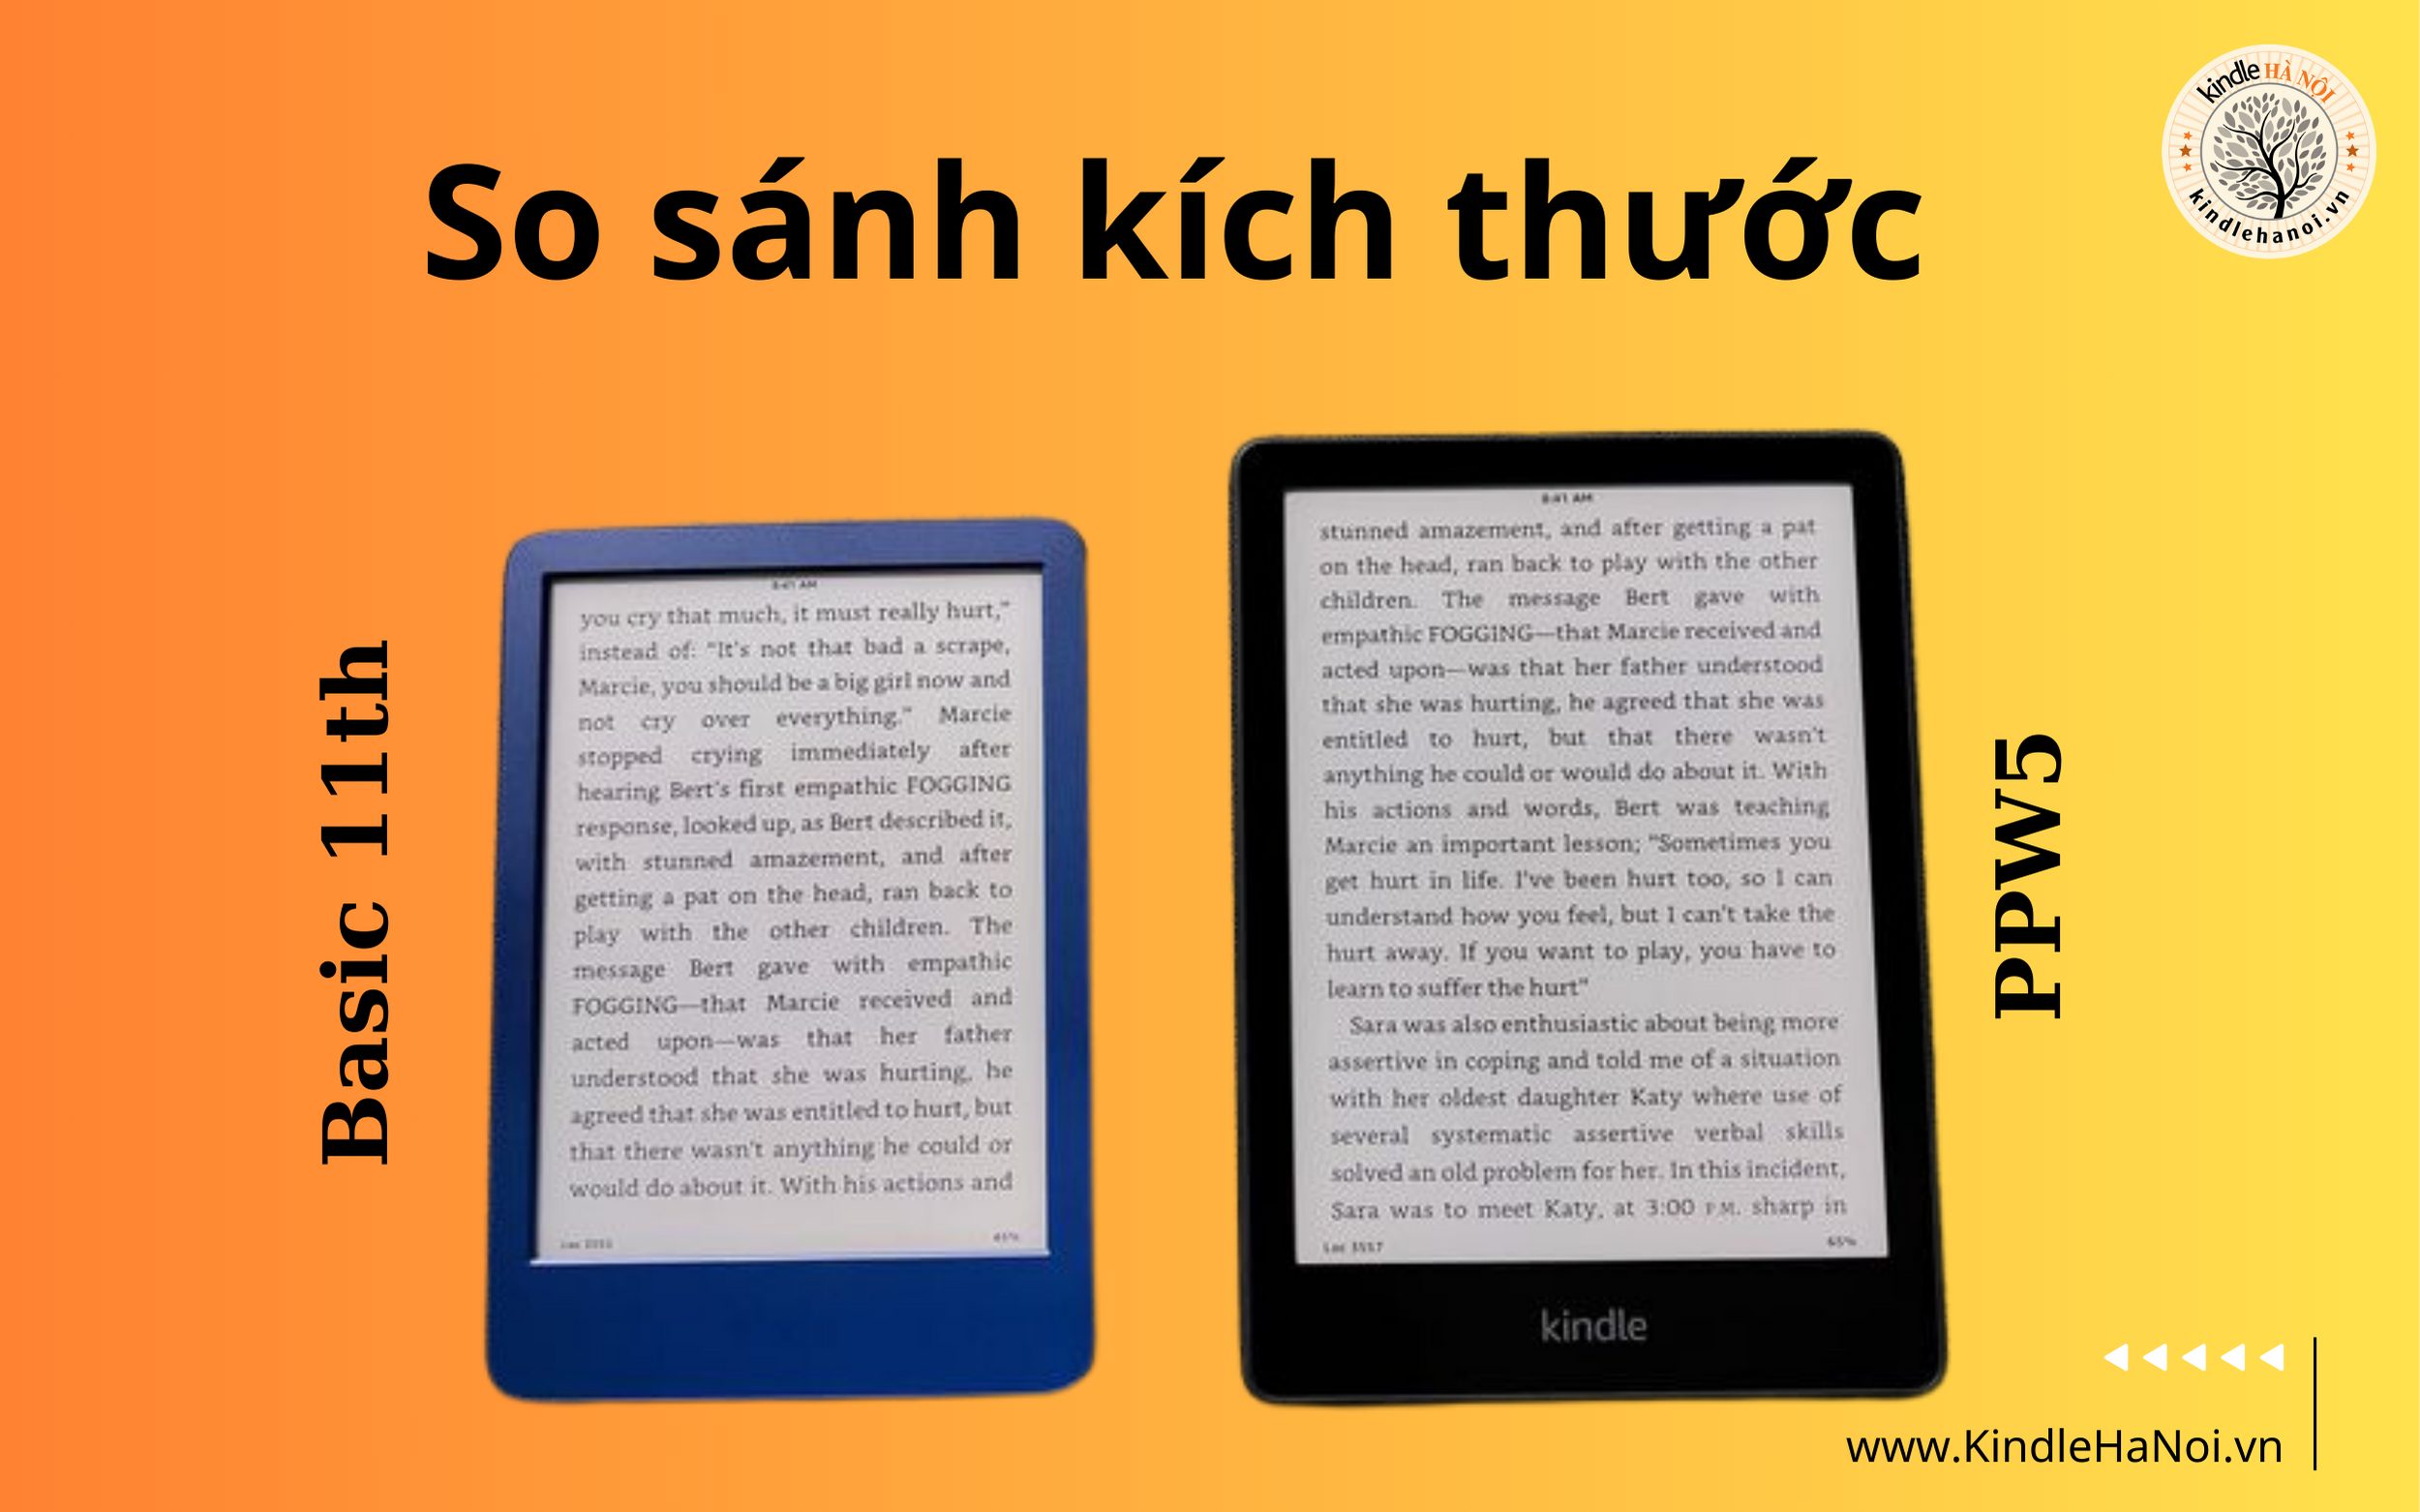 Máy đọc sách Kindle Basic 2022 (11th) - Store Kindle Hà Nội